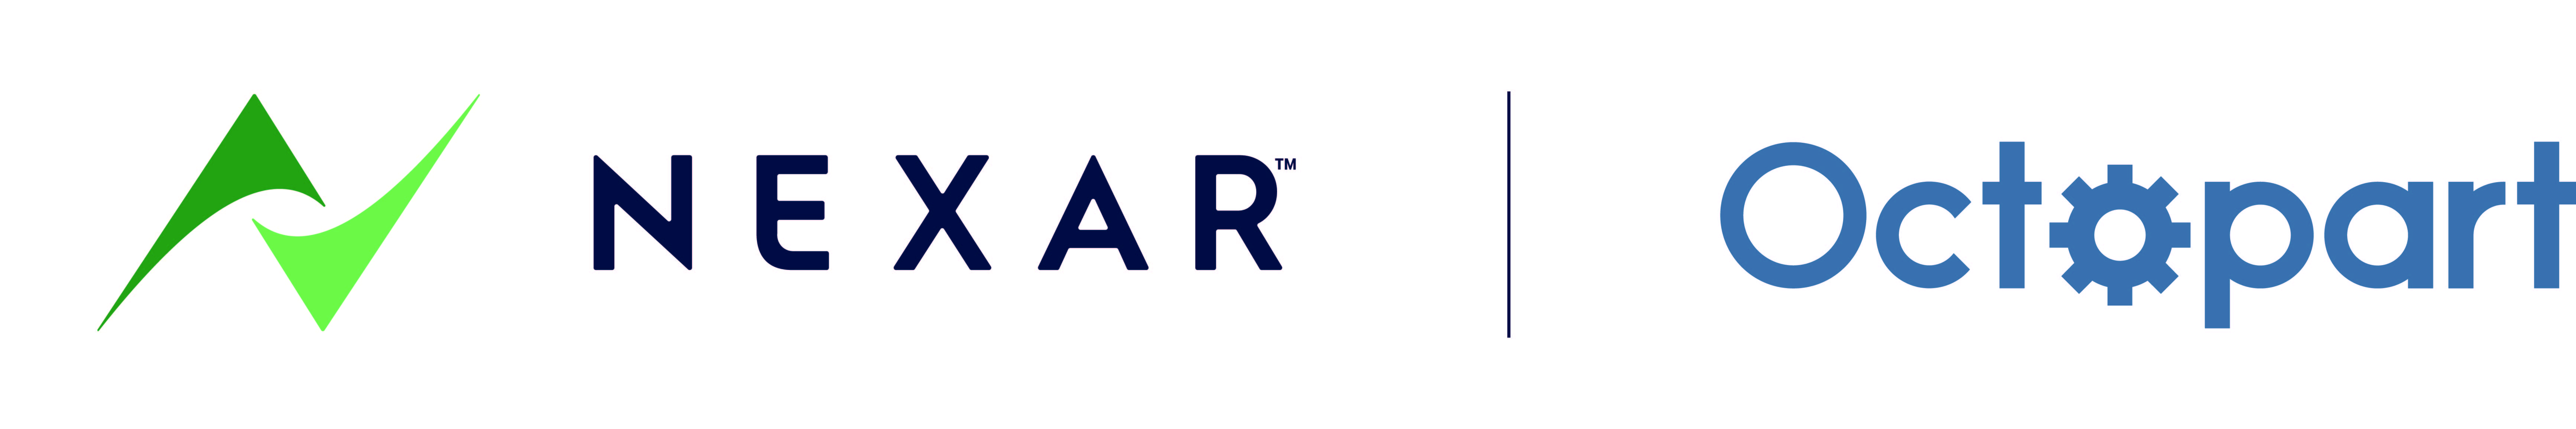 Nexar and Octopart logos